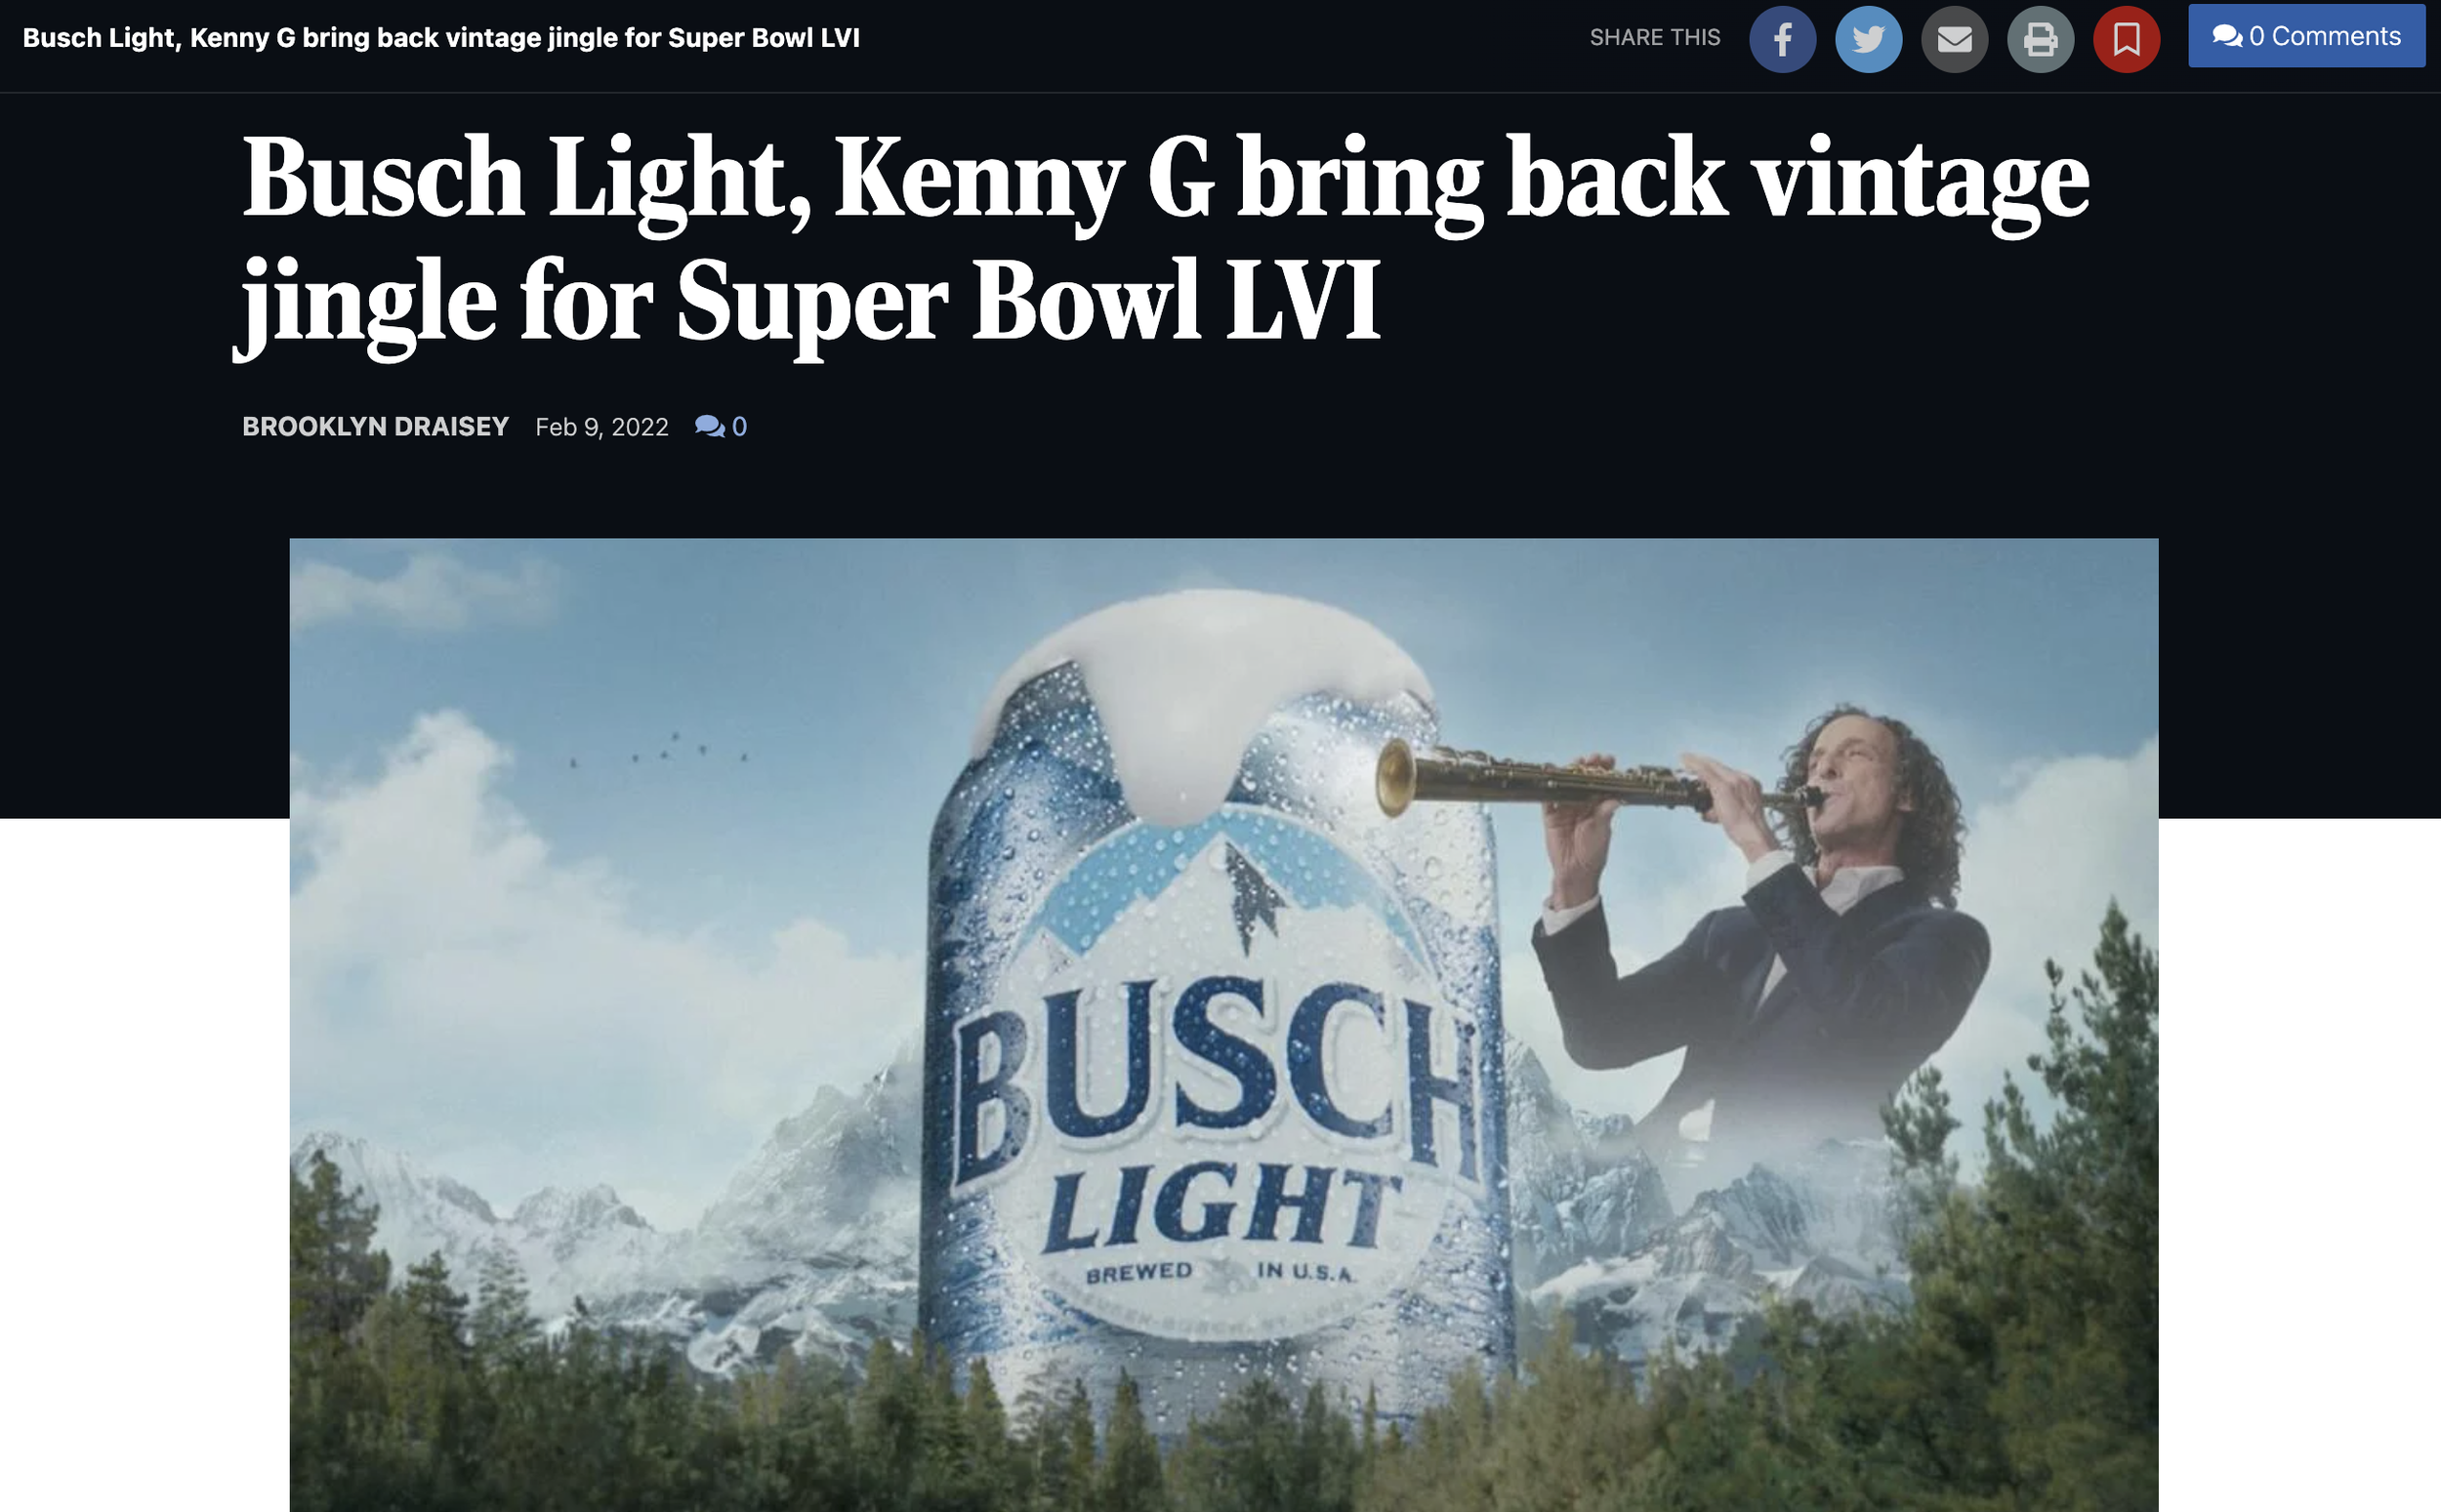 Busch Light, Kenny G bring back vintage jingle for Super Bowl LVI